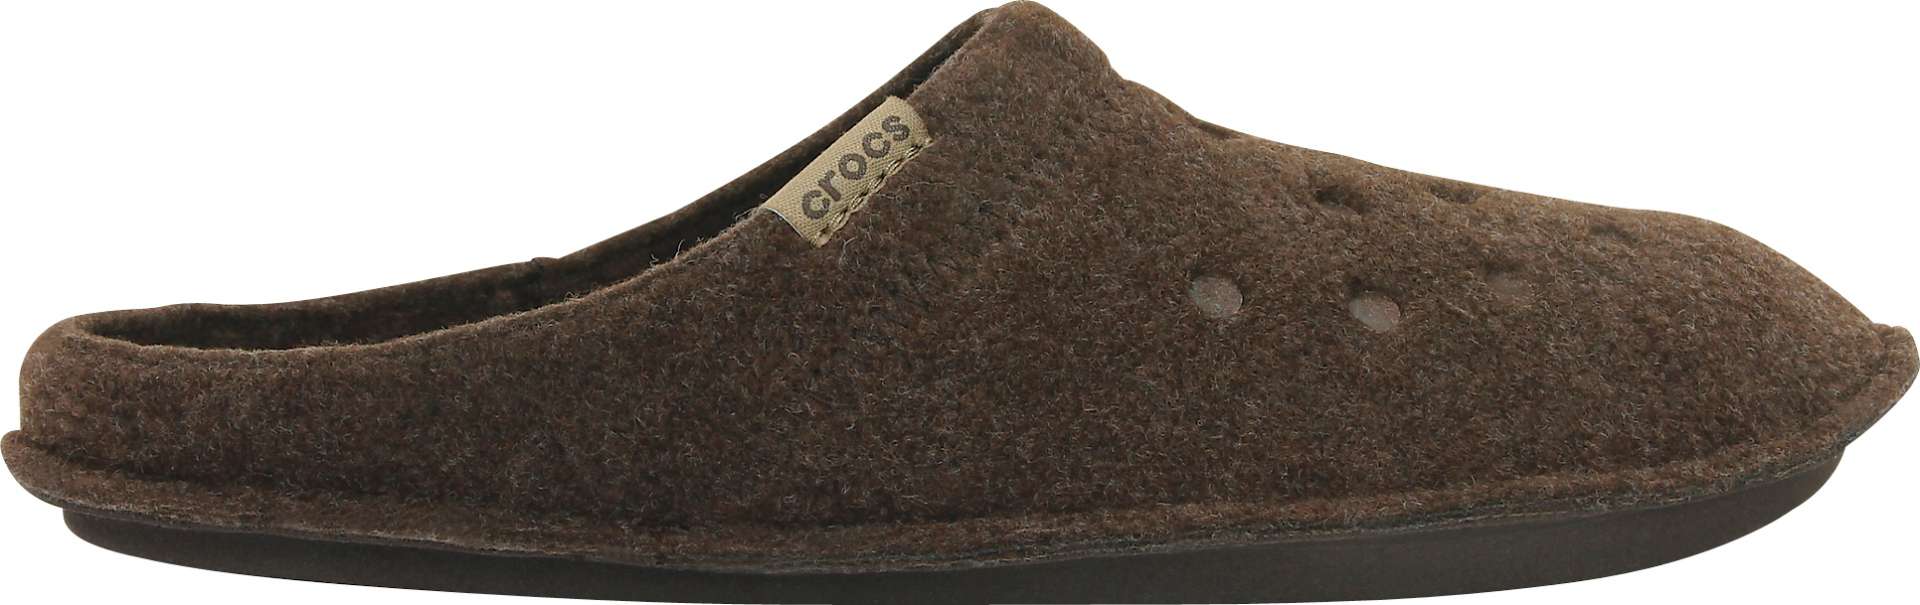 Crocs Classic Slipper Hausschuhe Braun